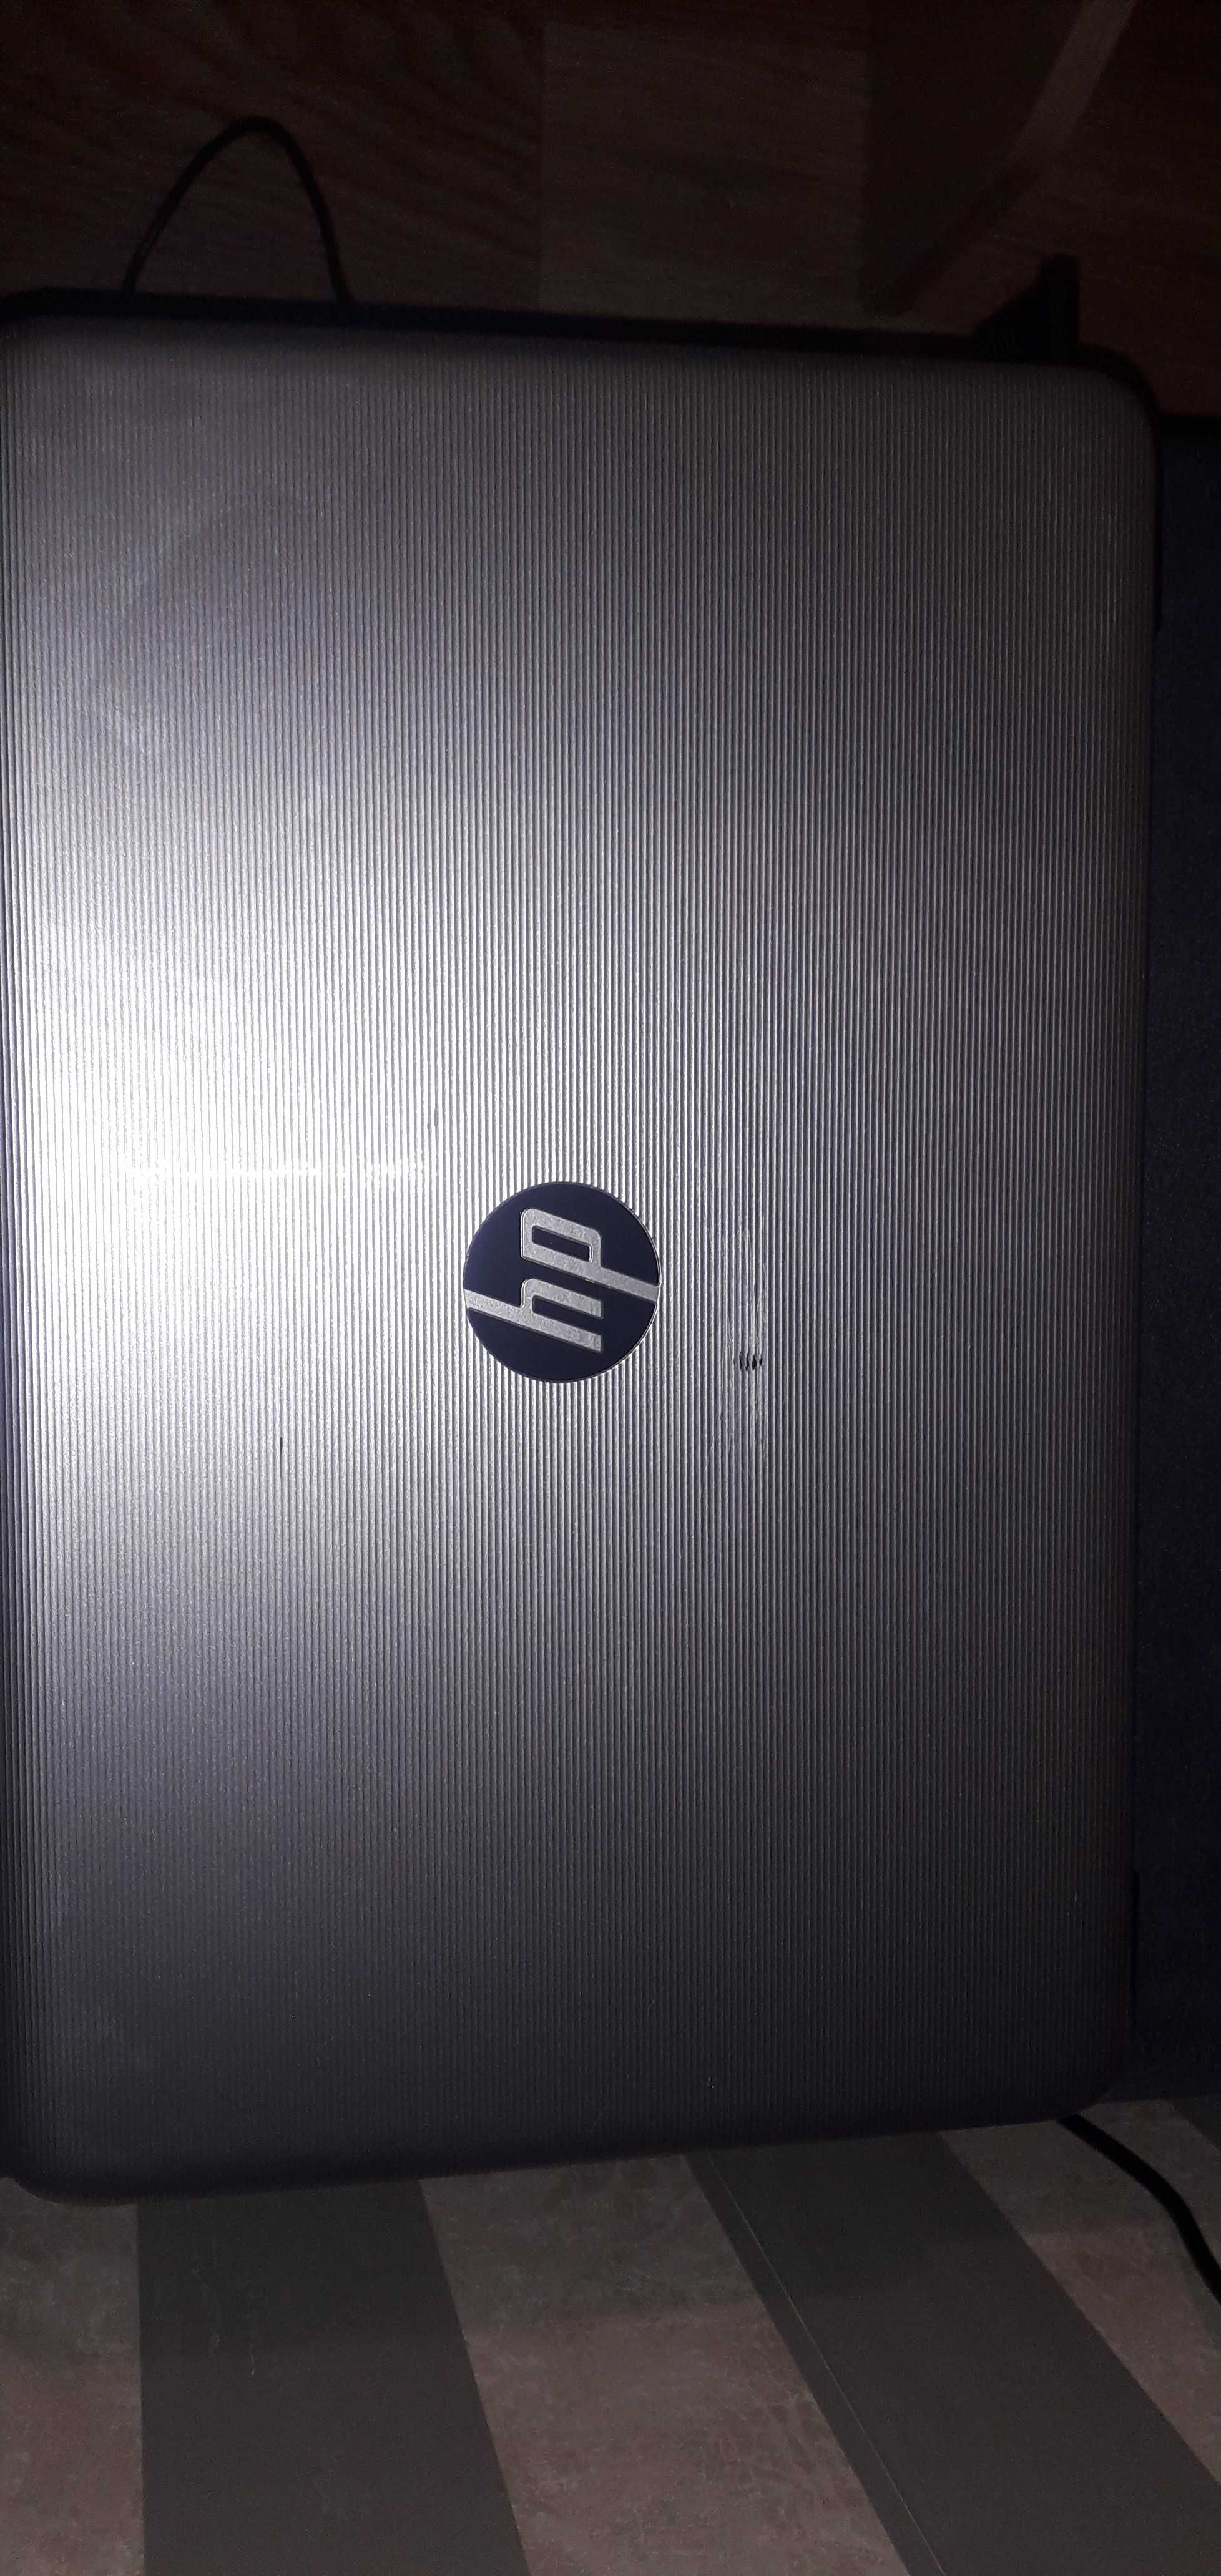 Ноутбук HP 4 ядра